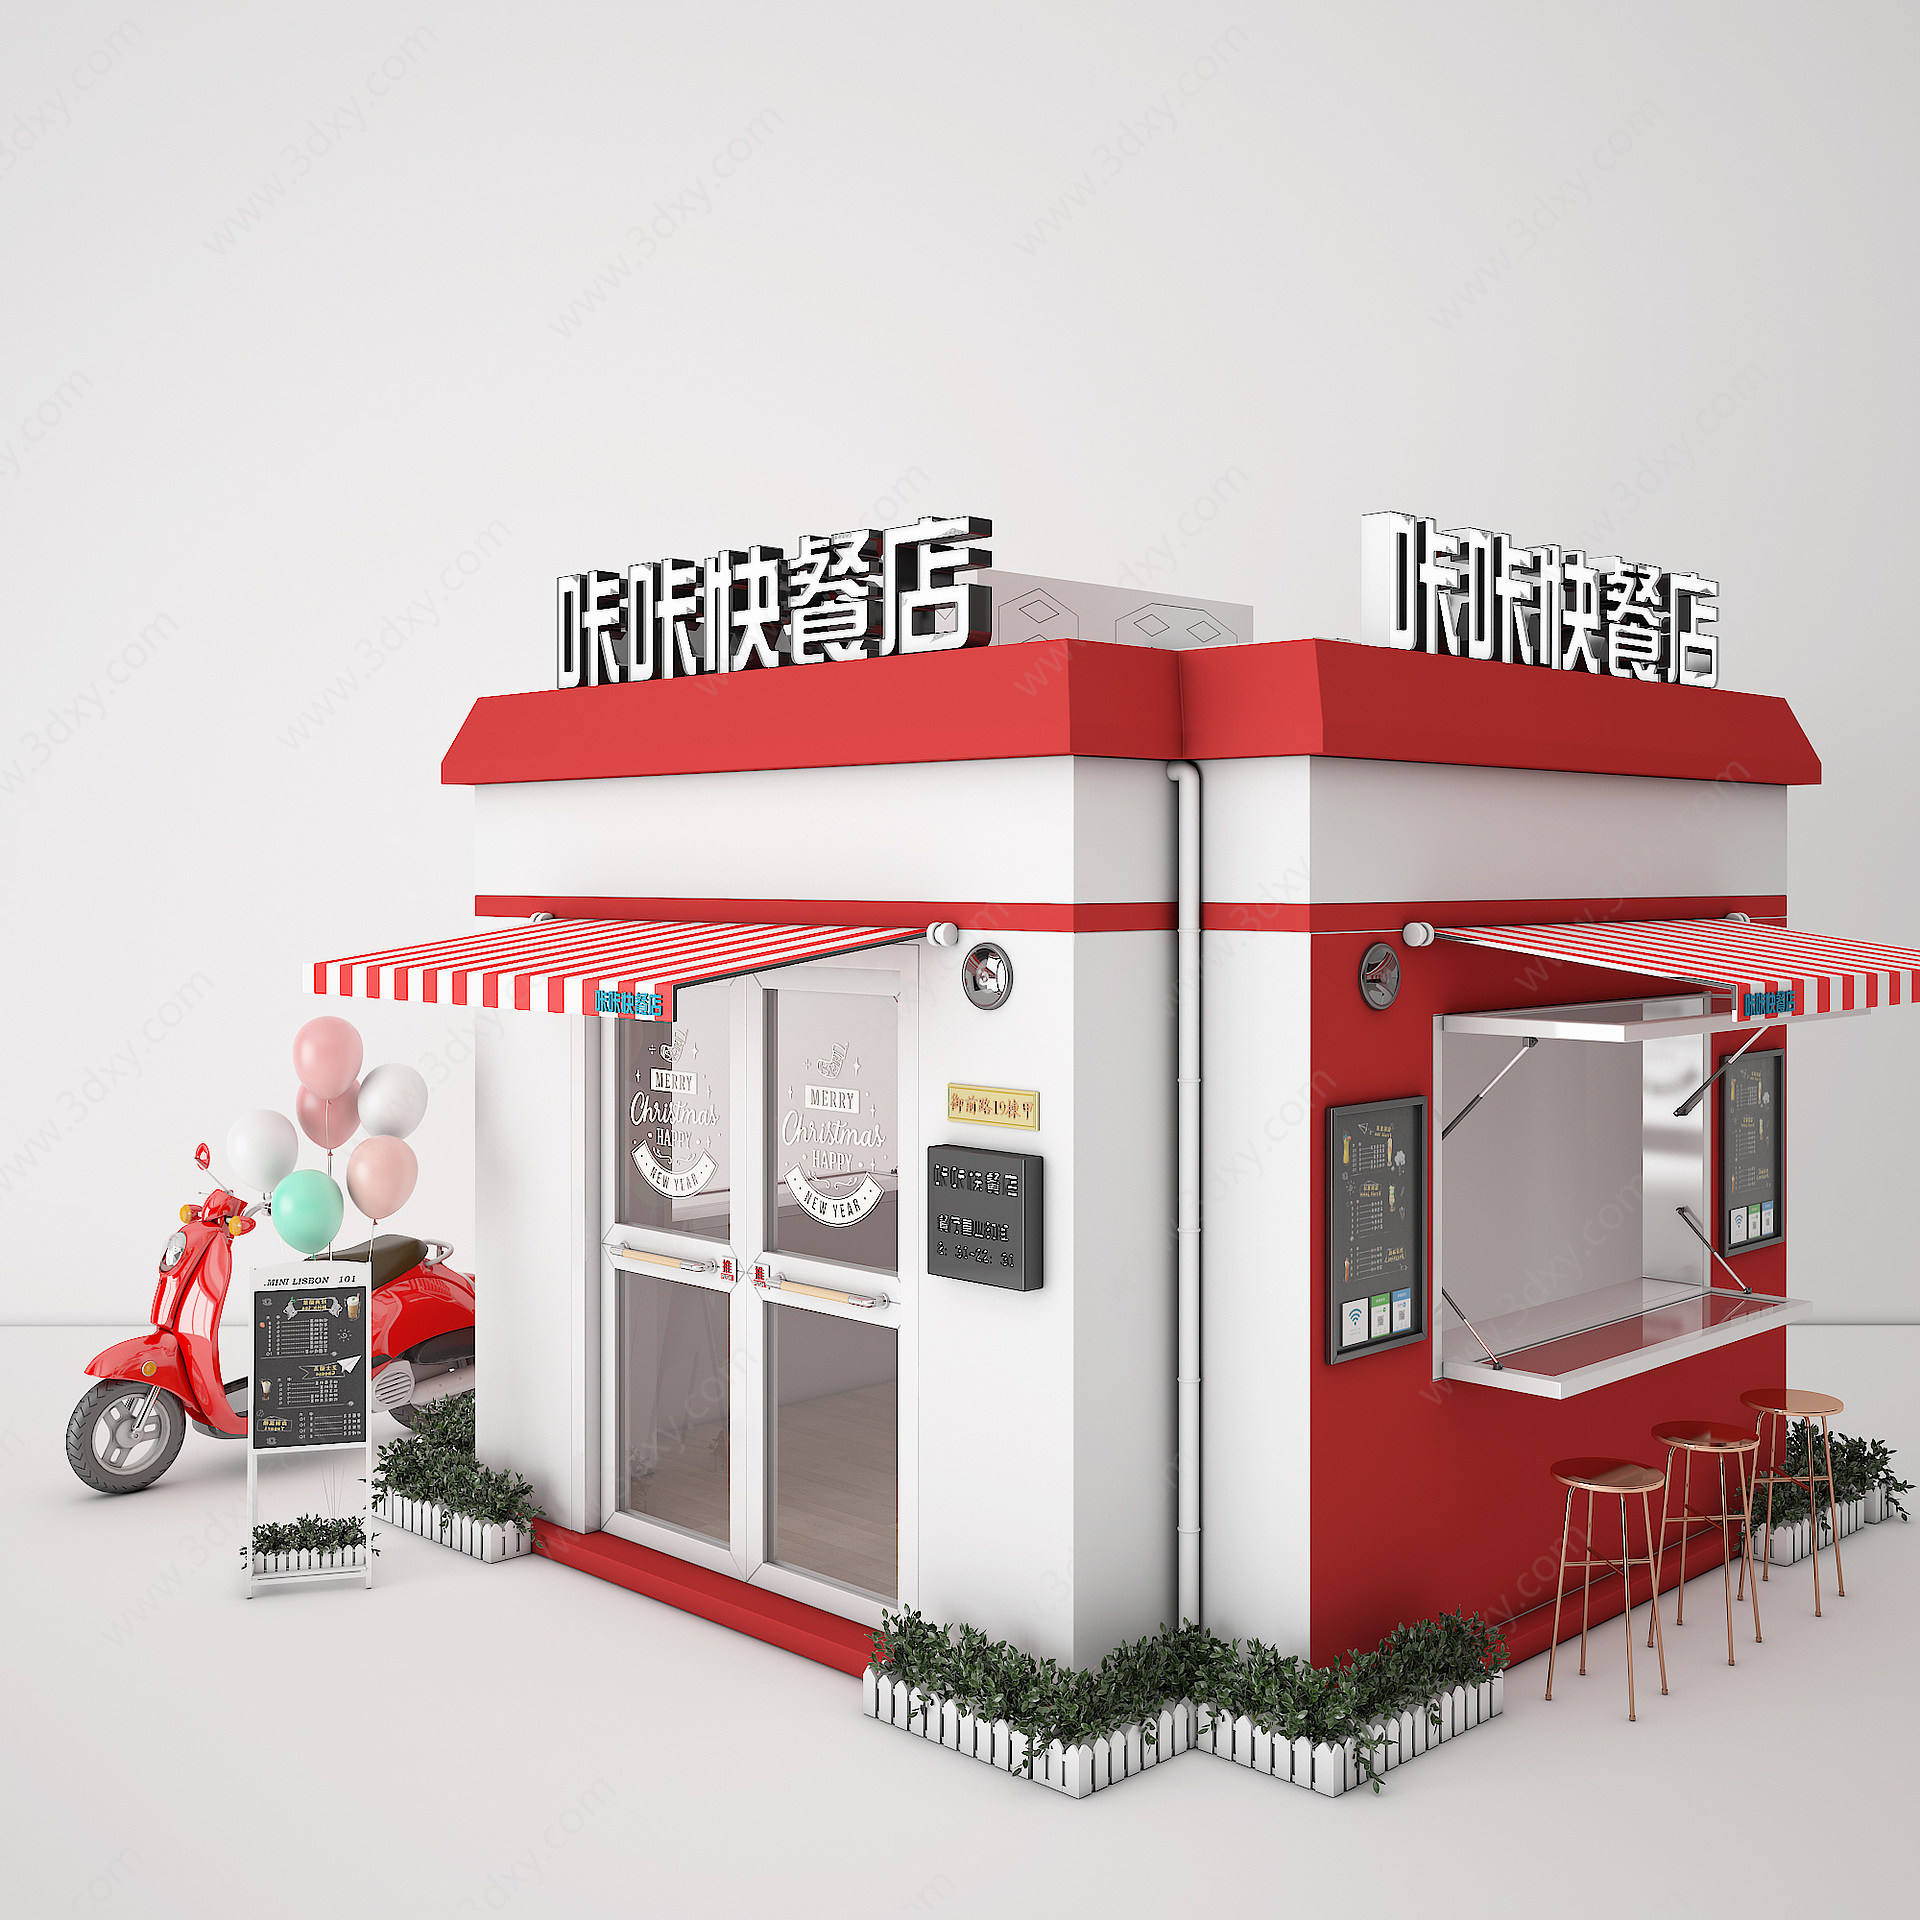 现代快餐店3D模型